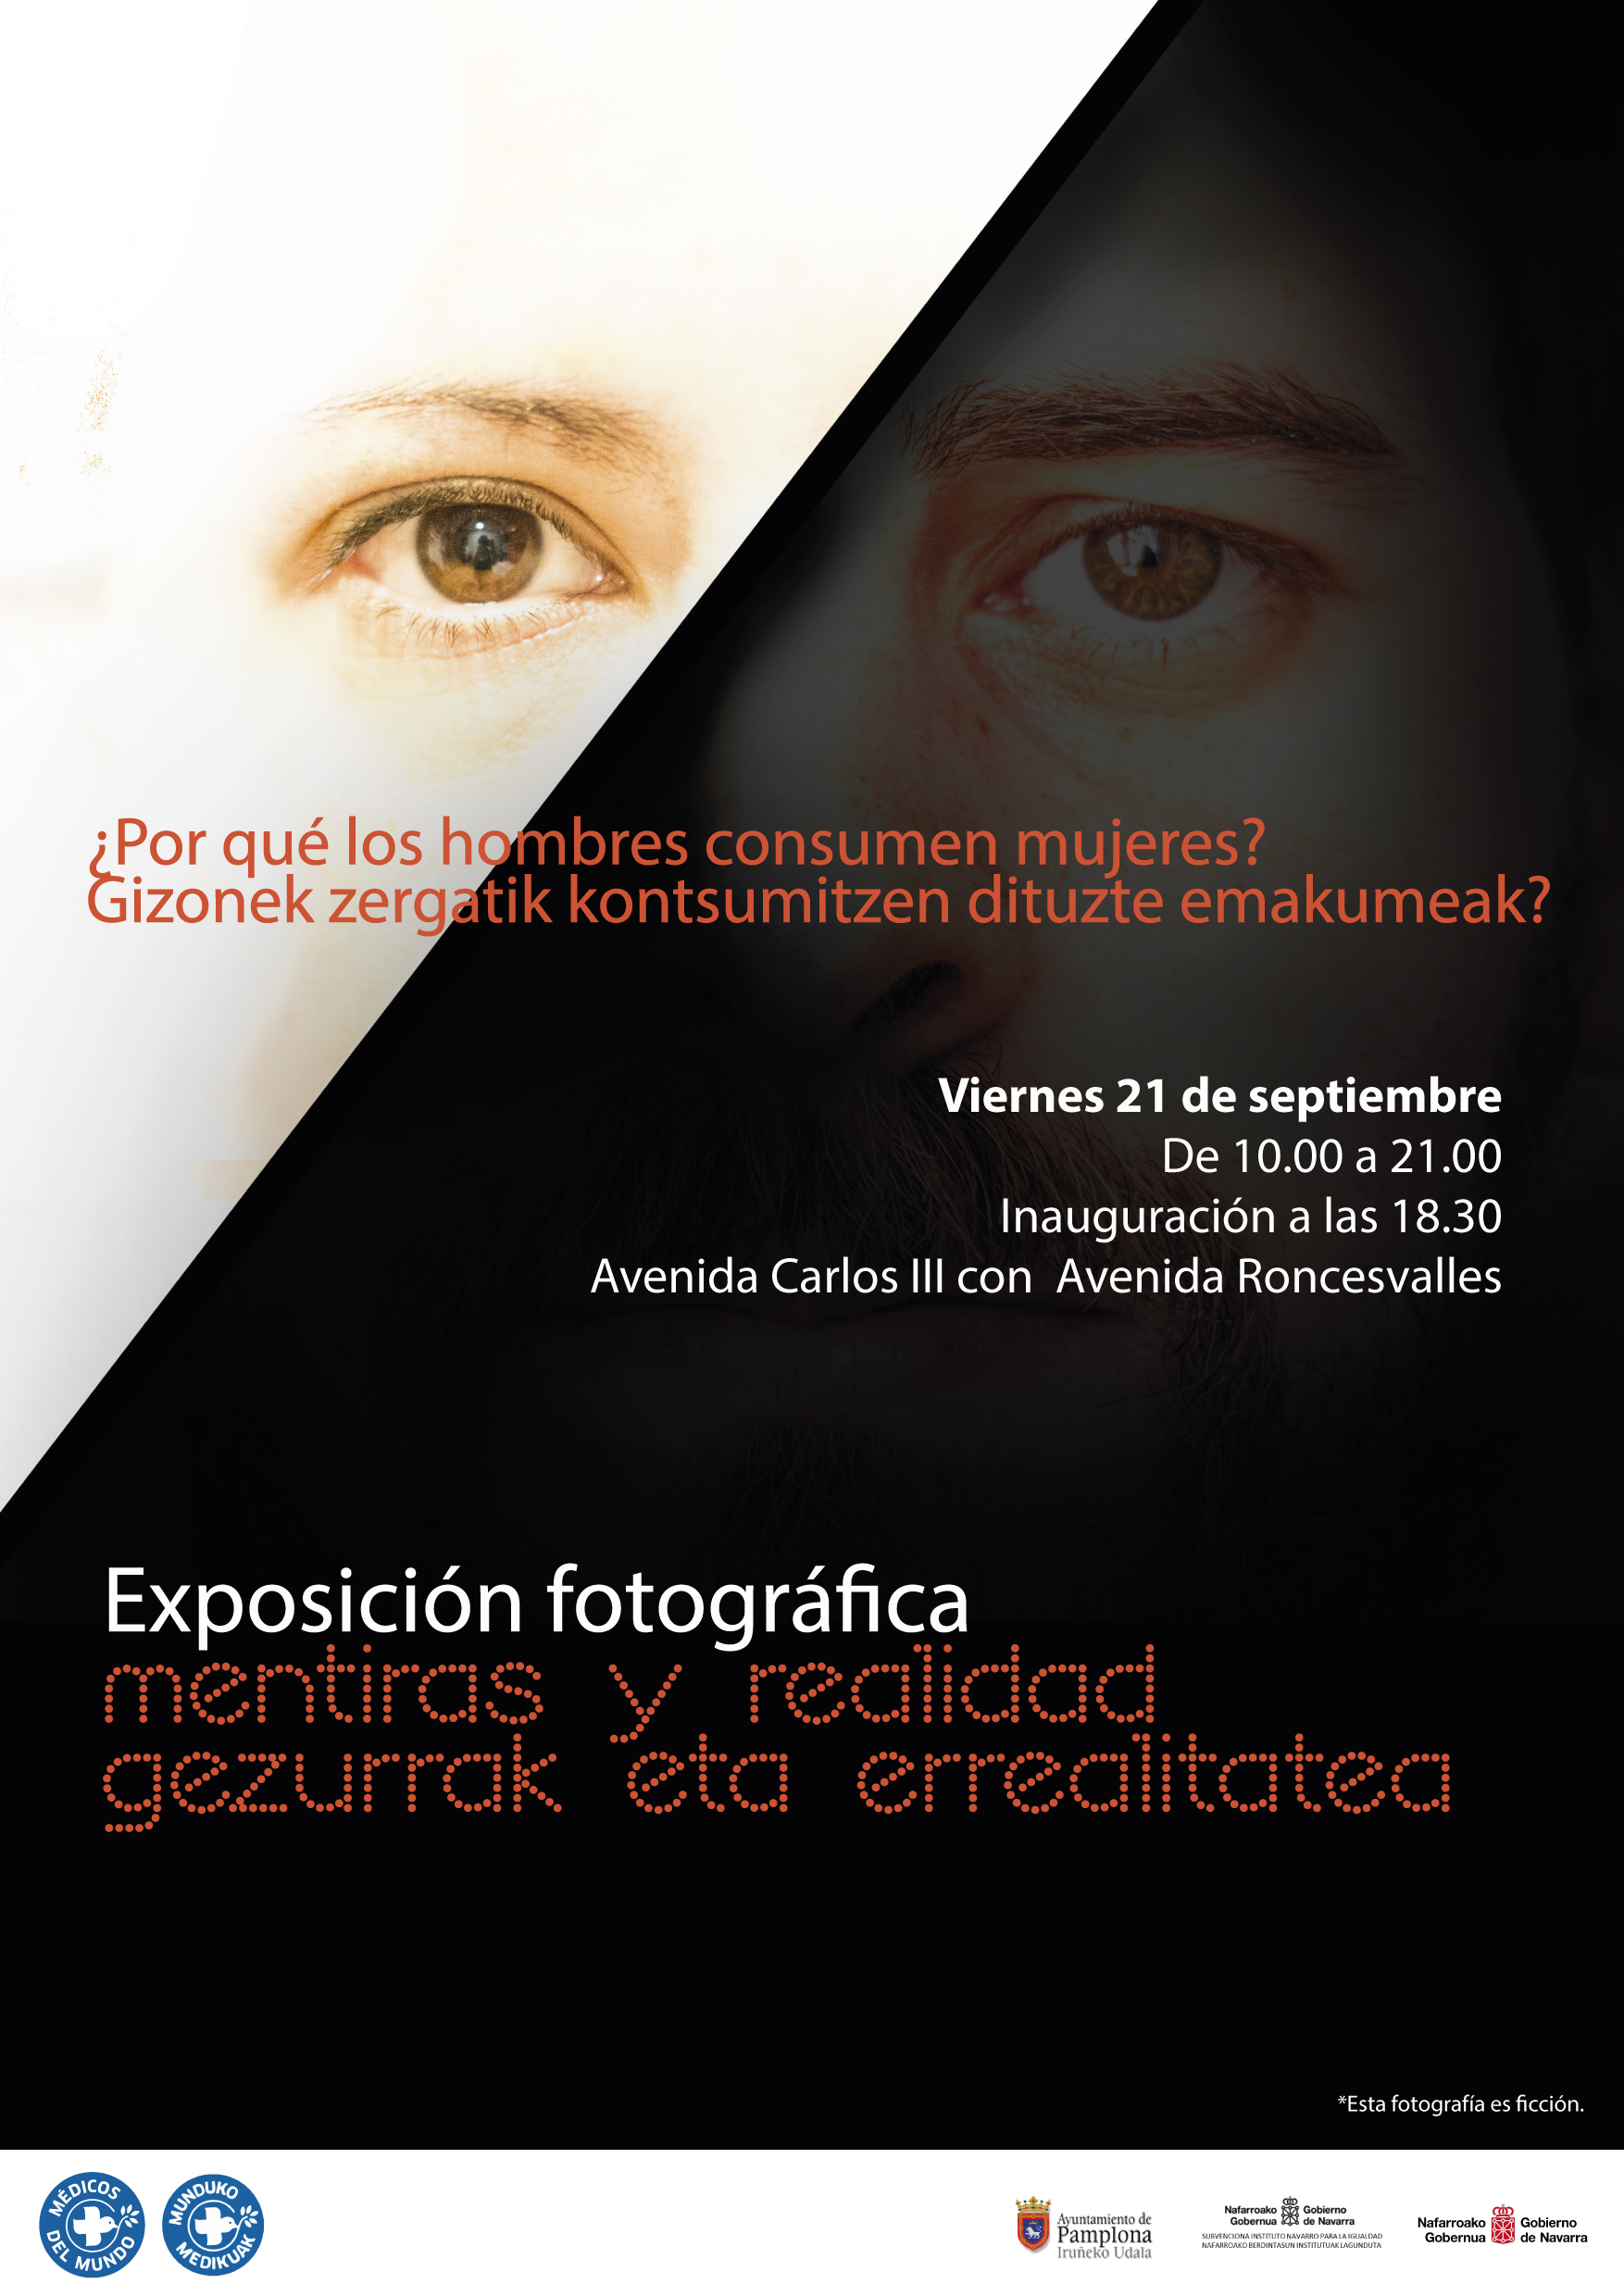 Cartel de la exposción fotográfica "Mentiras y Realidades"